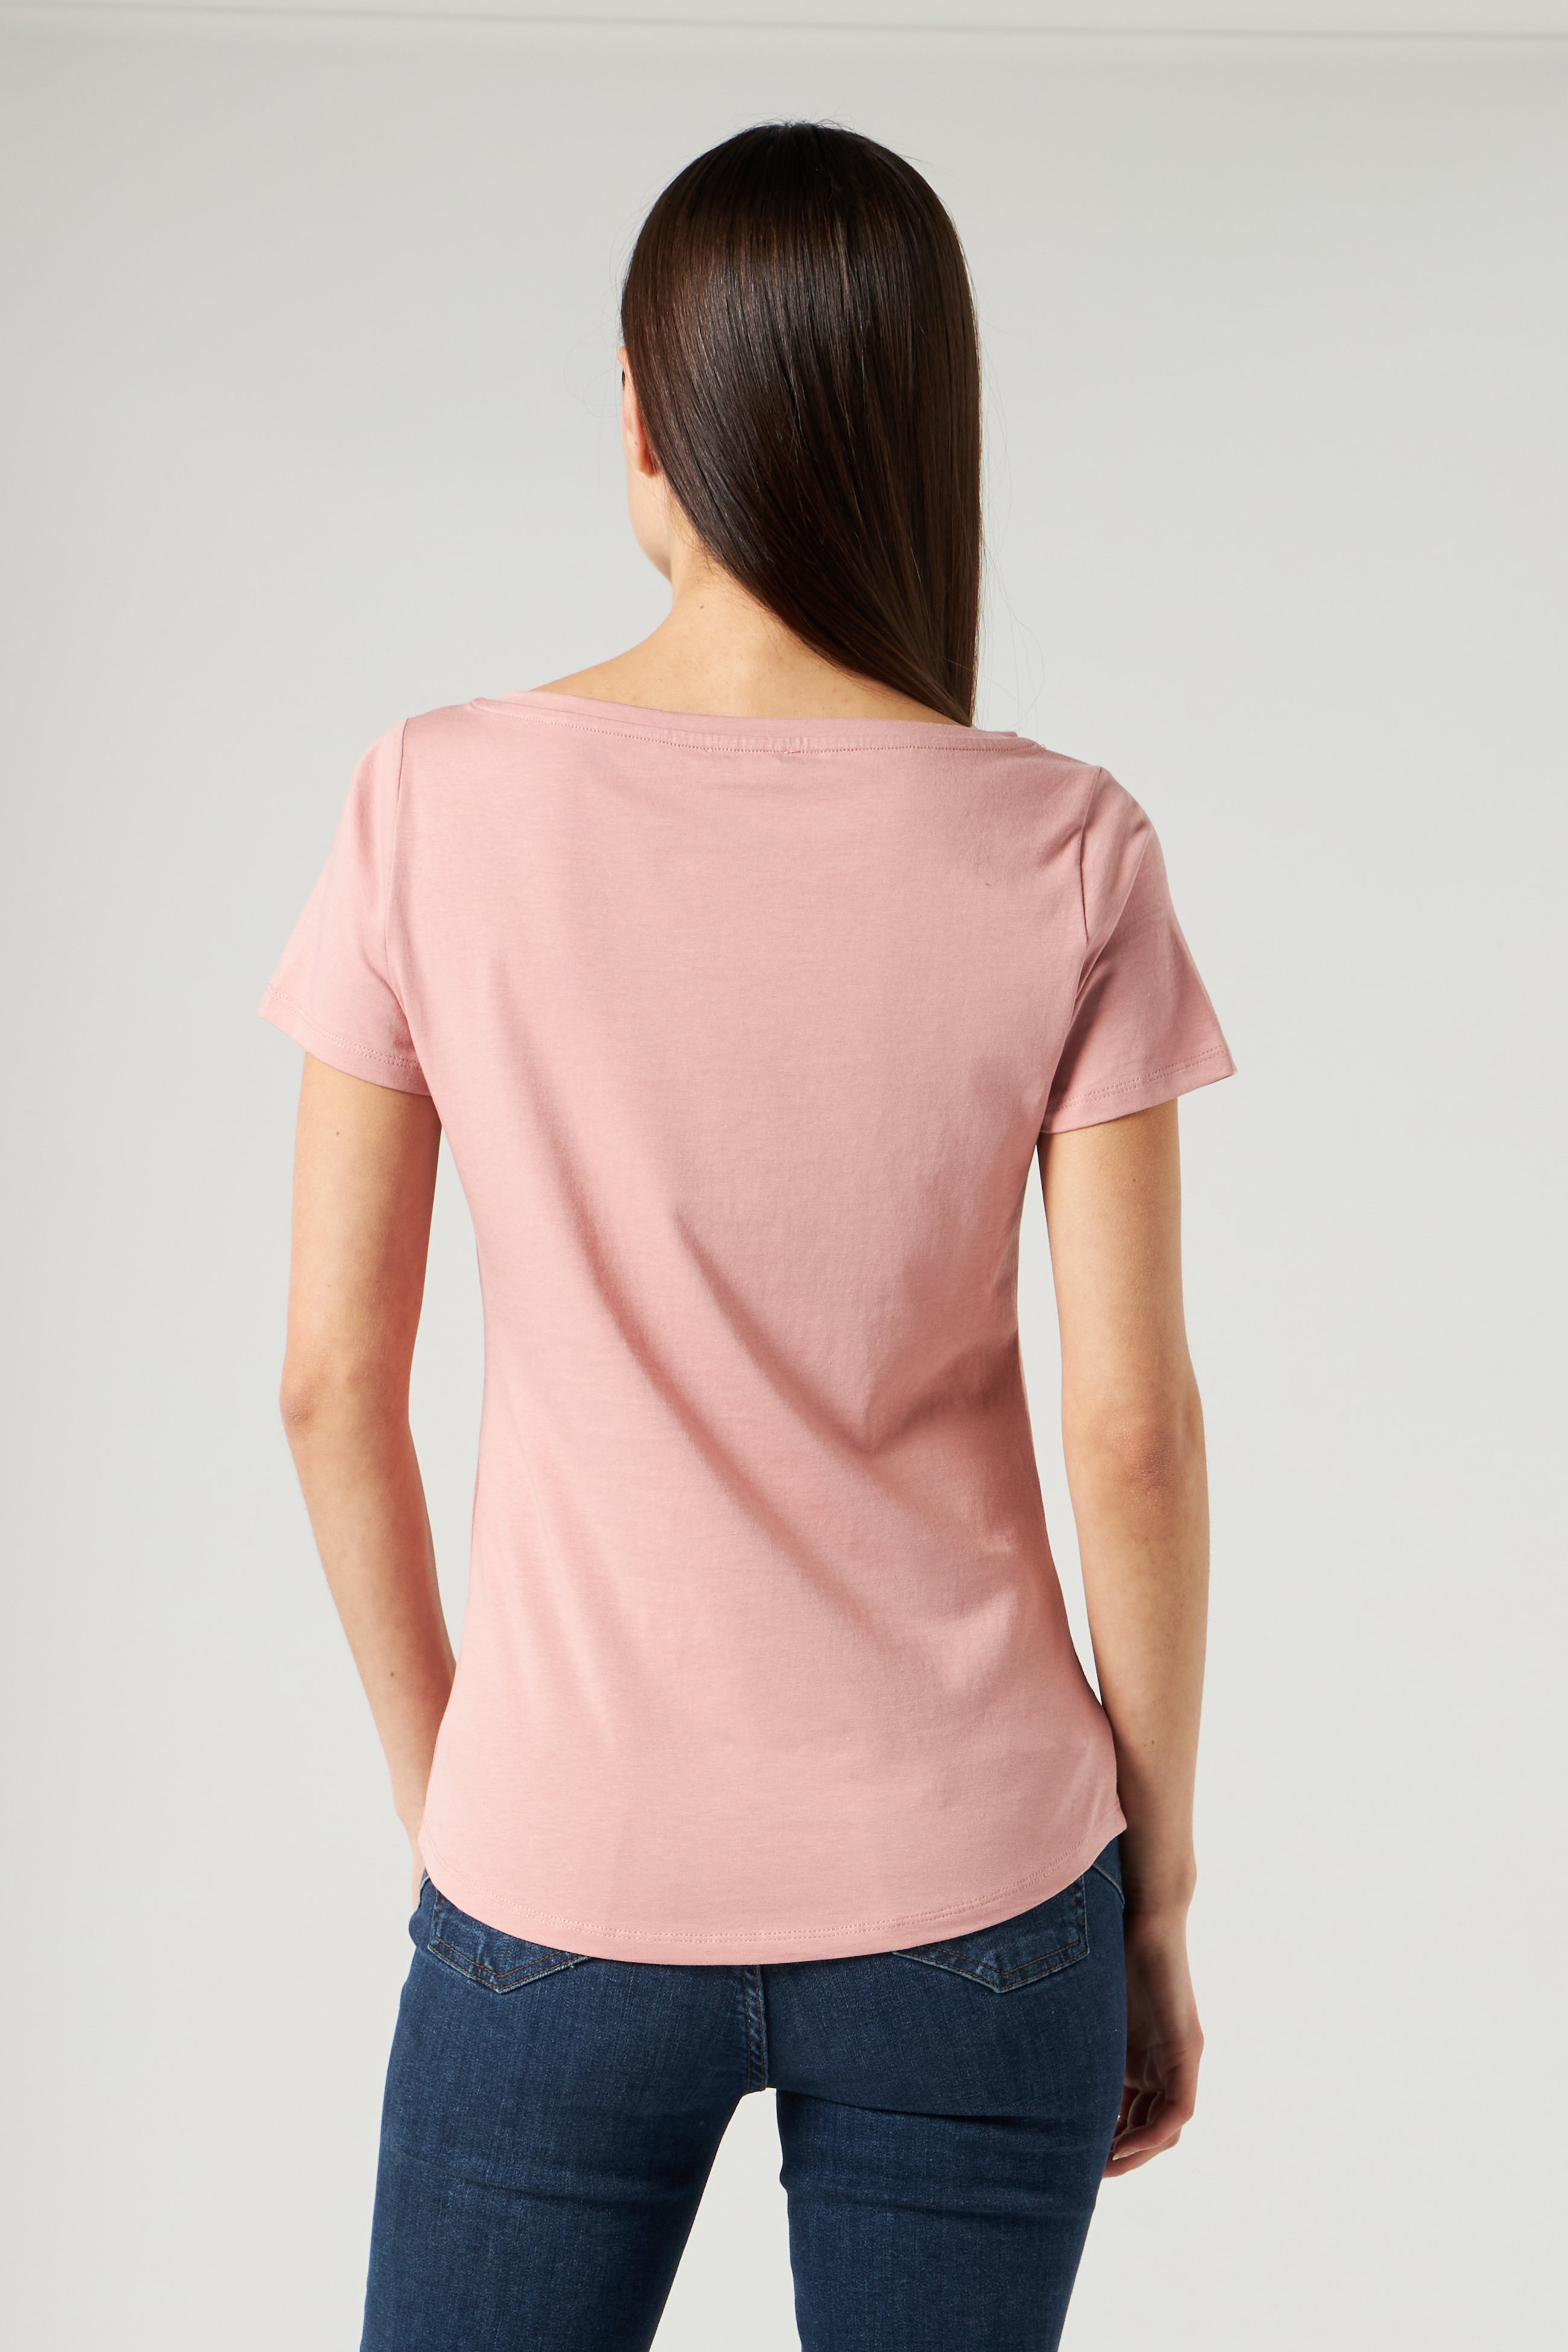 LIU JO Pink T-shirt with Rhinestones